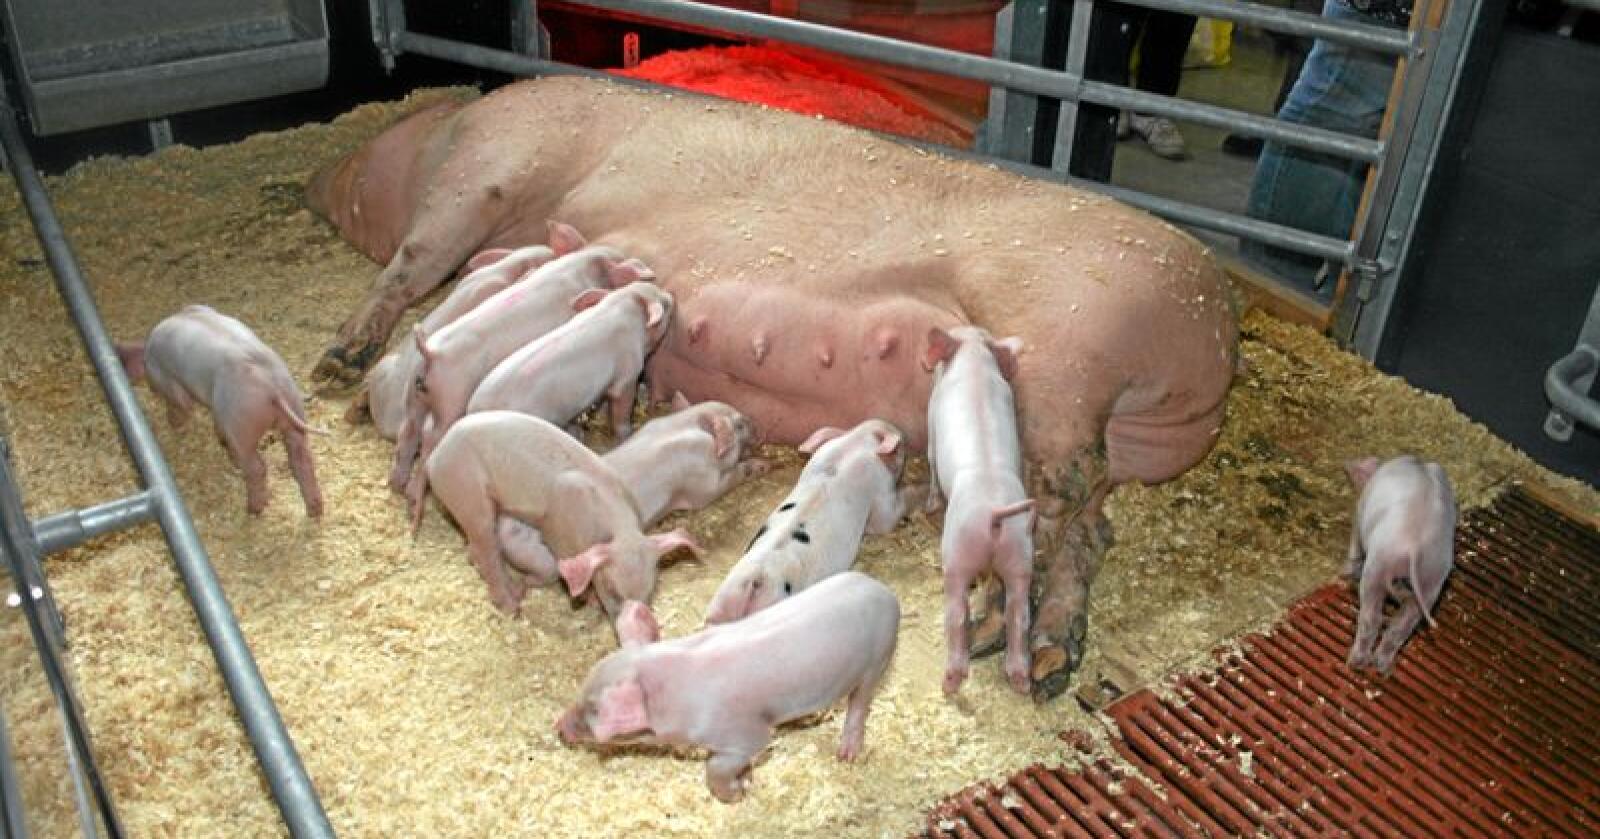 Dugnad: Leiaren i Bondelaget oppfordrar grisebønder til å bli med på ein dugnad for å redusere talet på grisungar og betre marknadsbalansen for å få opp prisane. Foto: Bjarne Bekkeheien Aase